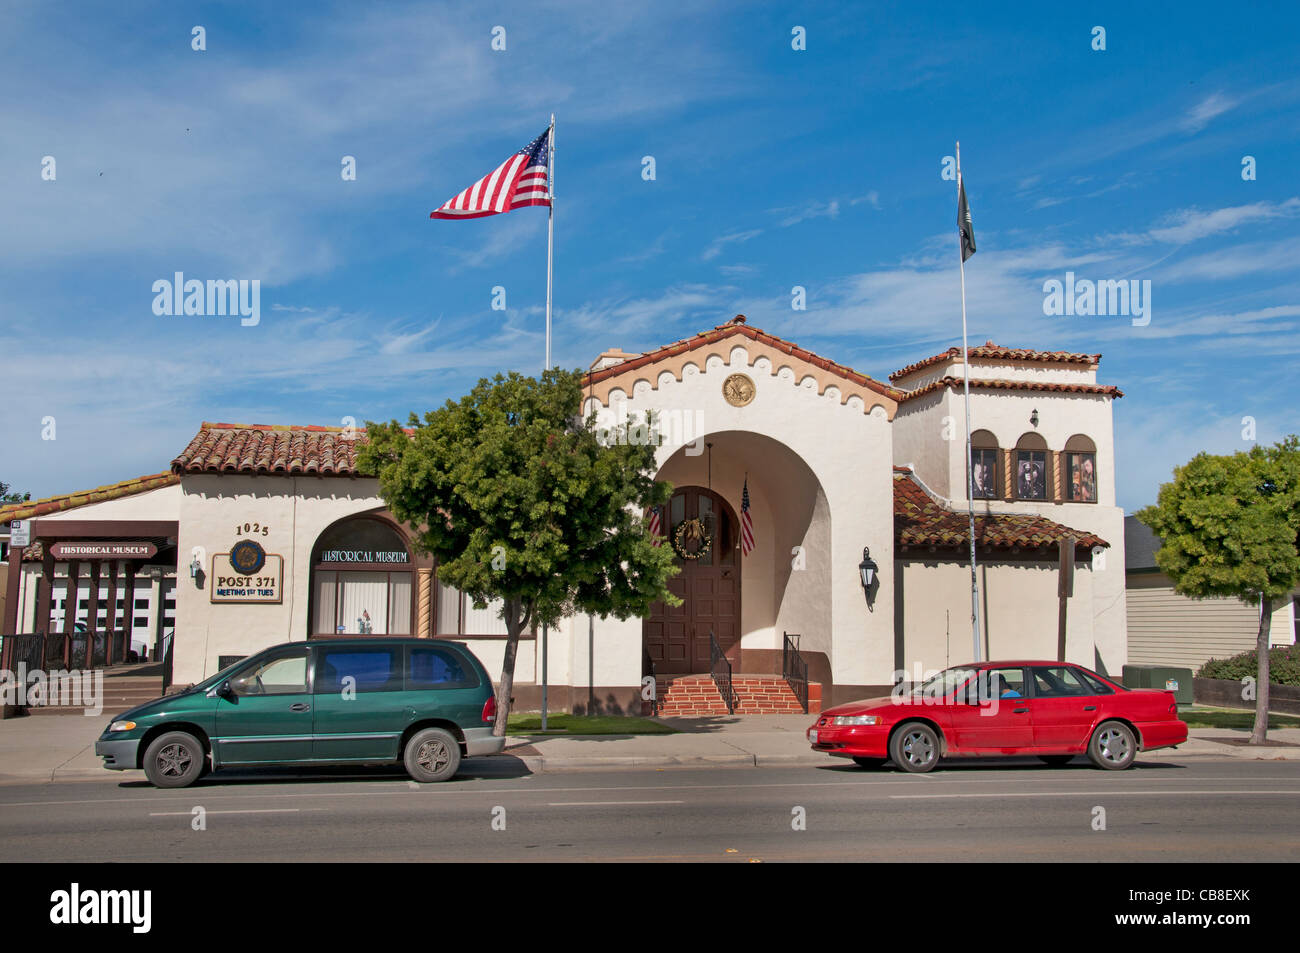 Guadalupe est une petite ville située dans le comté de Santa Barbara California United States Banque D'Images